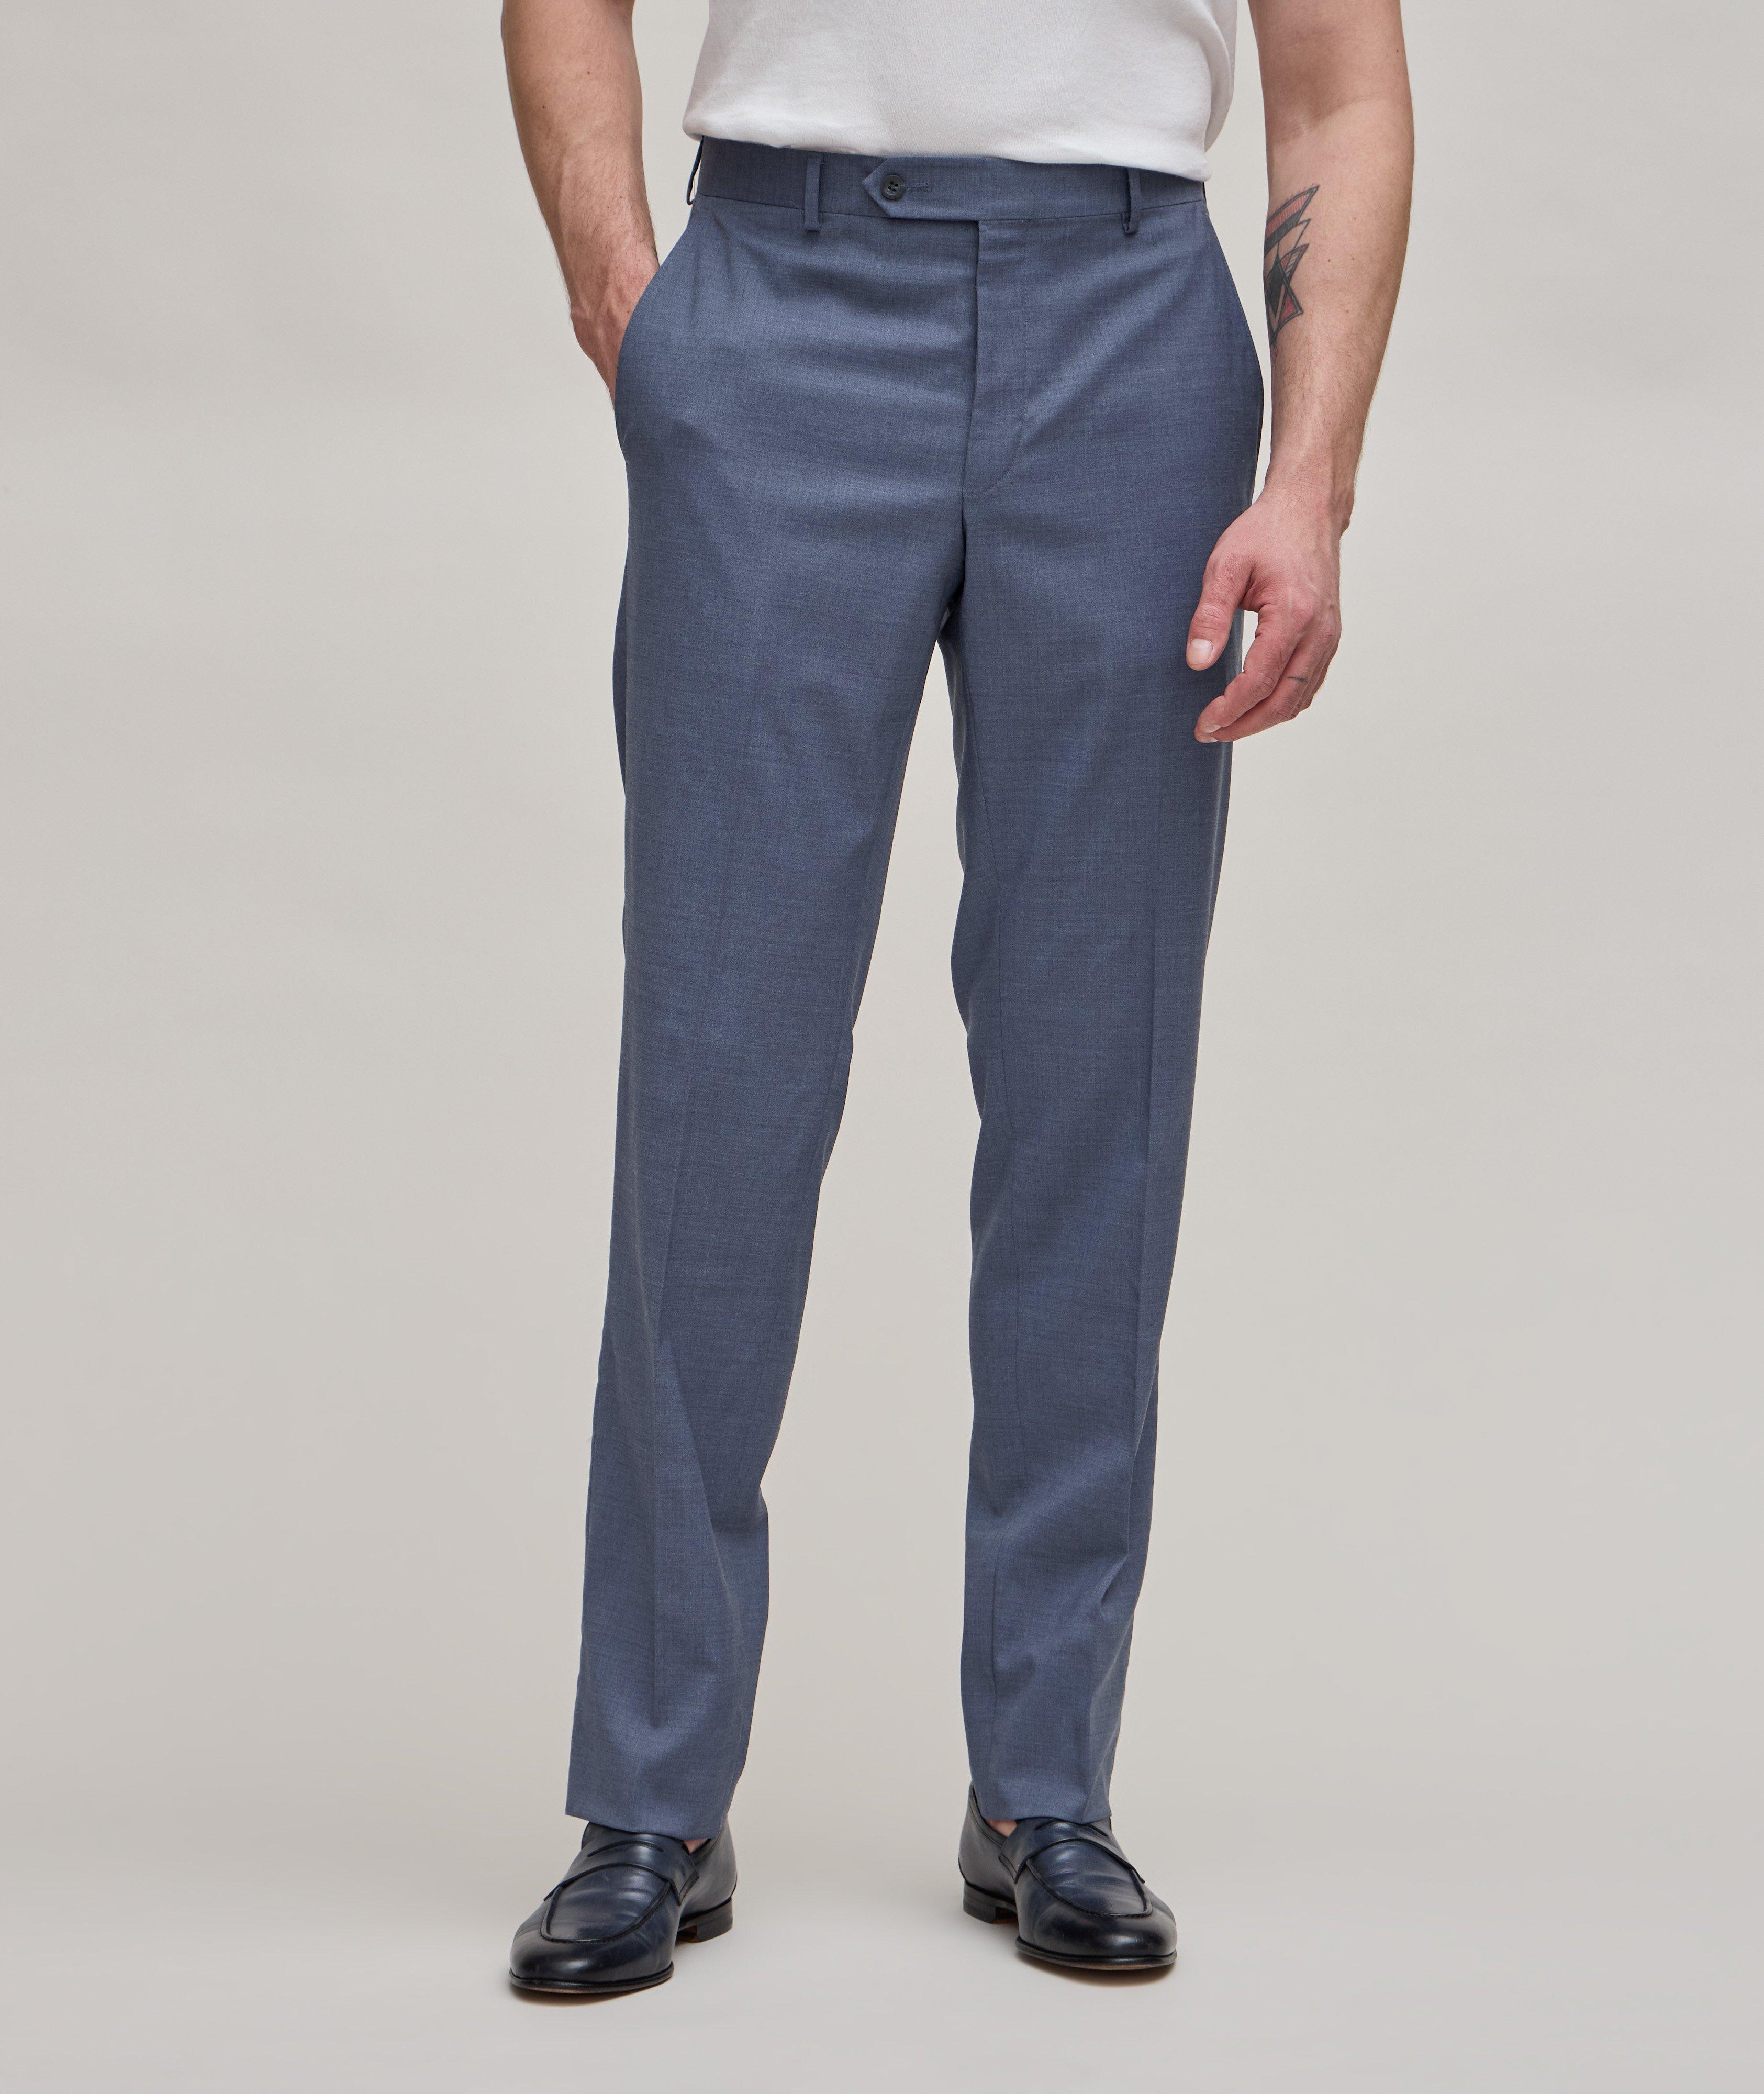 Pantalon habillé en laine Super 110, collection tropicale image 3